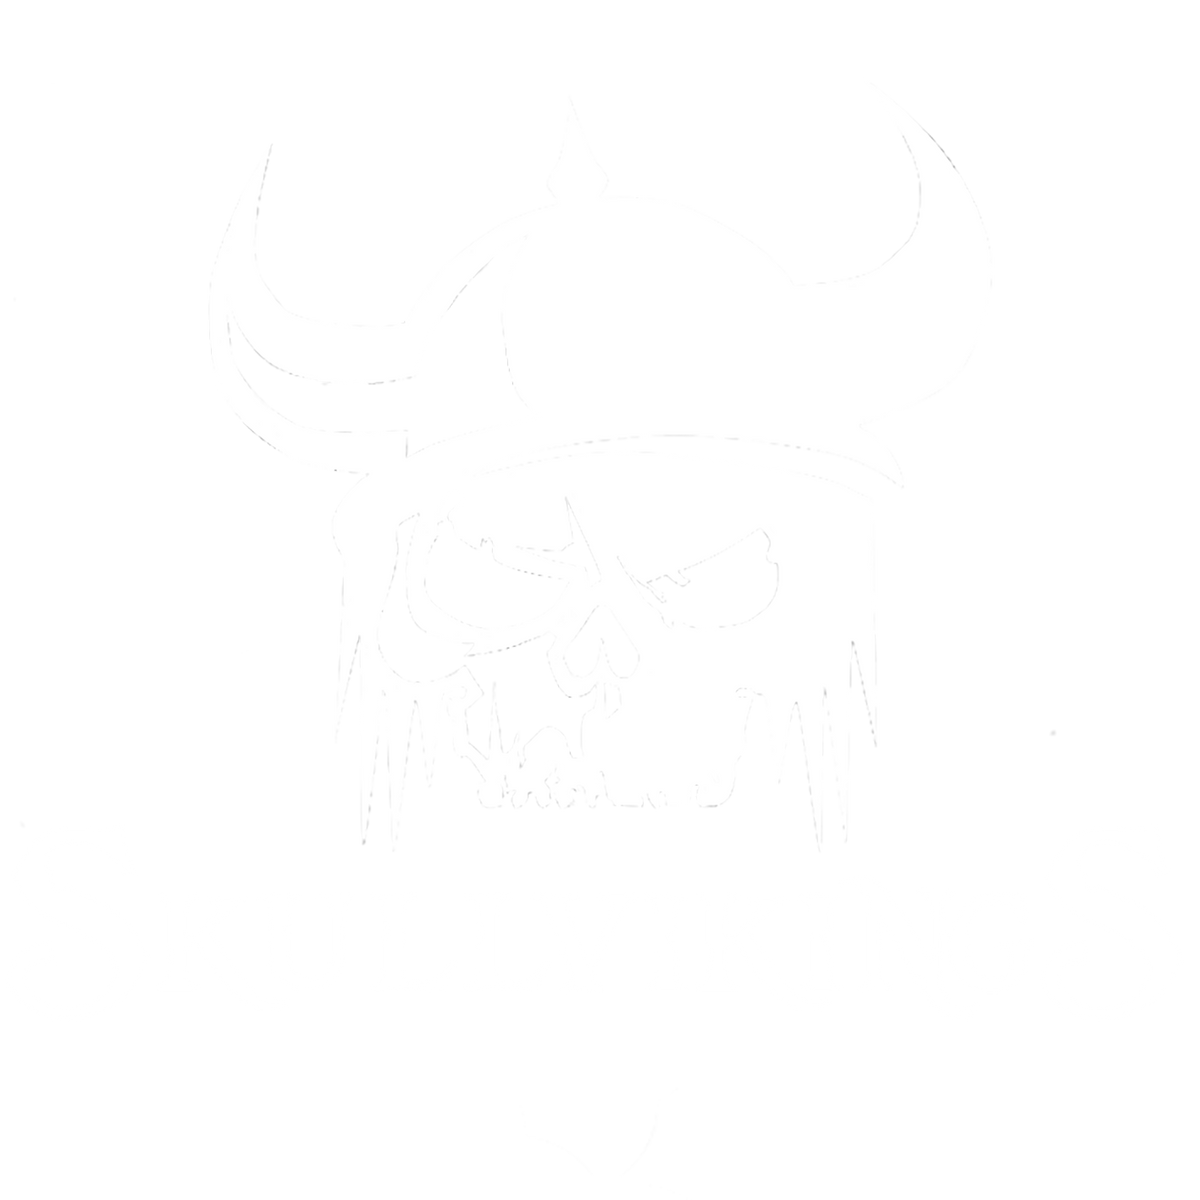 Skull Vikings - The UK Viking Store – Skullvikings